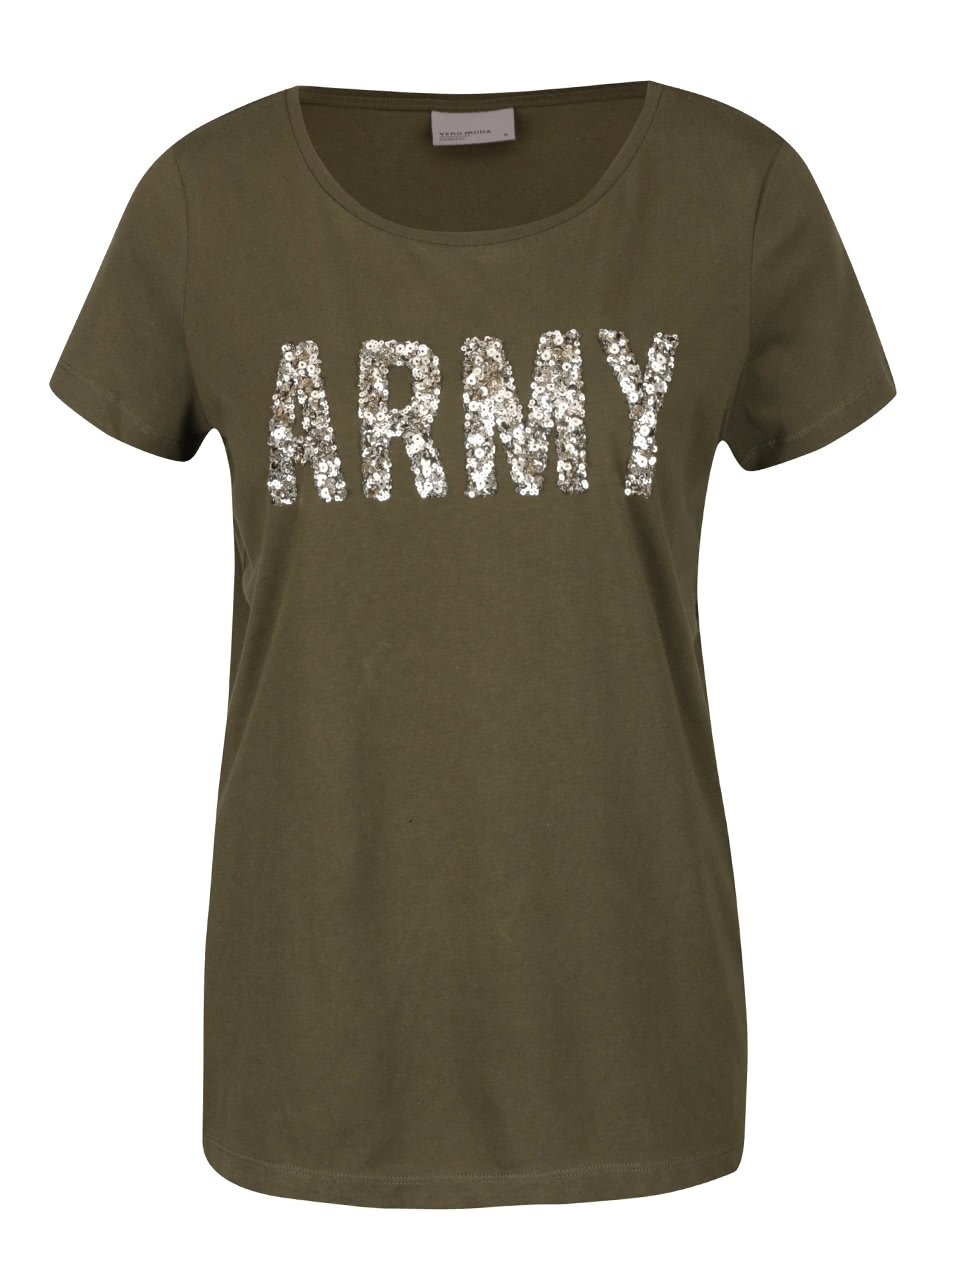 Khaki tričko s flitrovanou aplikací Vero Moda Army